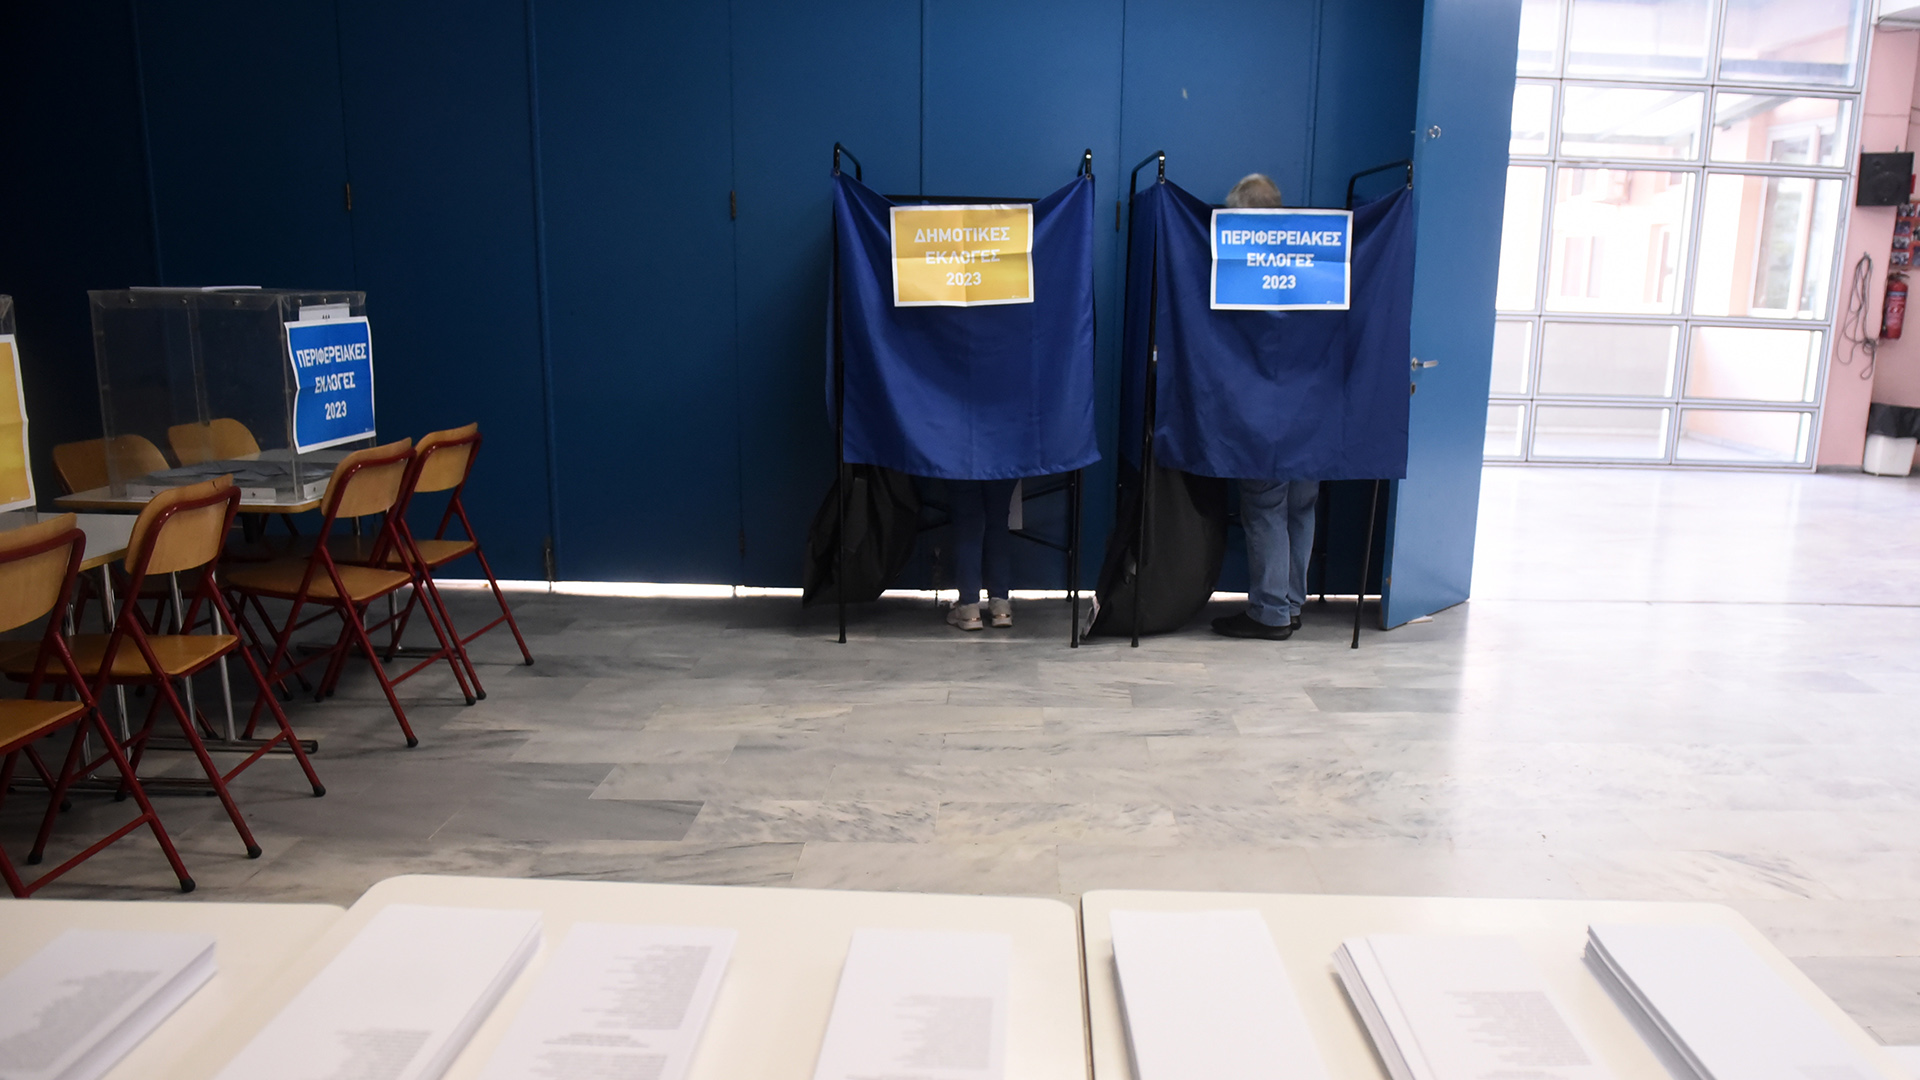 Έρημα εκλογικά κέντρα – Άδειες κάλπες – Ακόμα μικρότερη η συμμετοχή